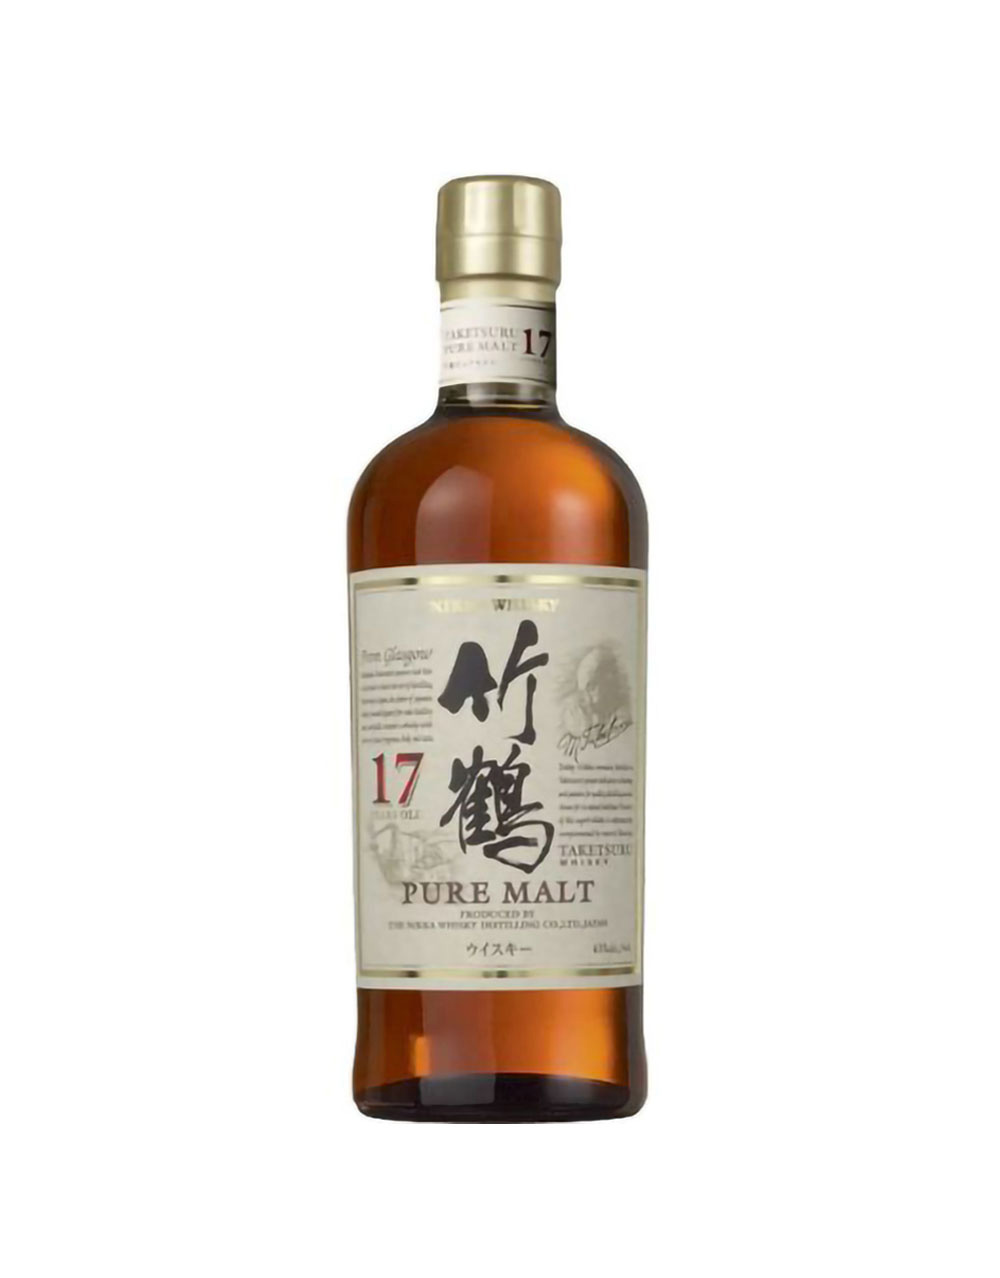 Nikka Taketsuru 17 Year Old Pure Malt Whisky